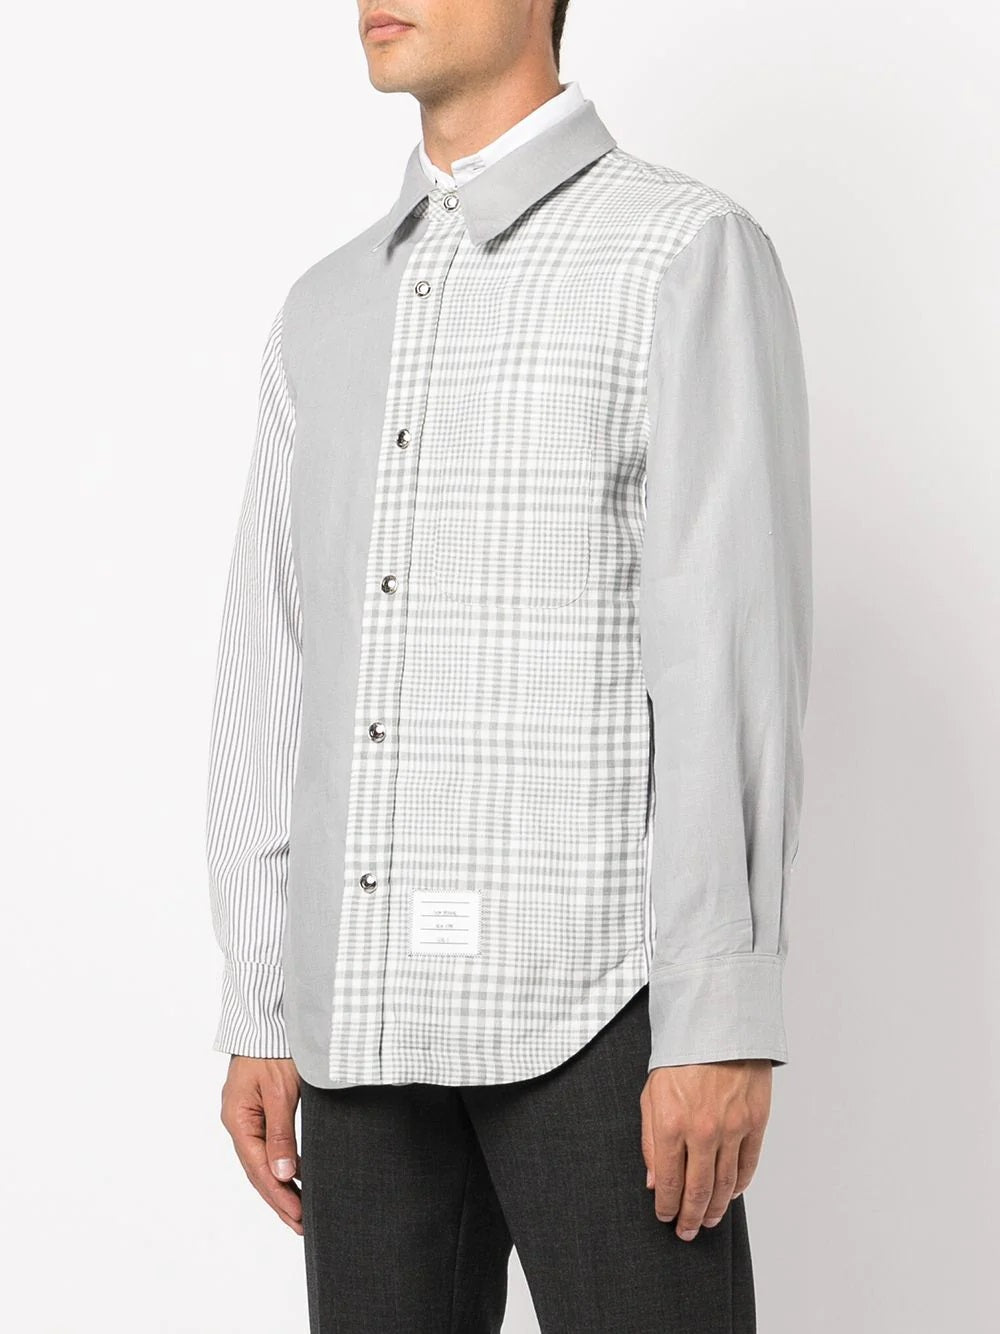 panelled line shirt - SHEET-1